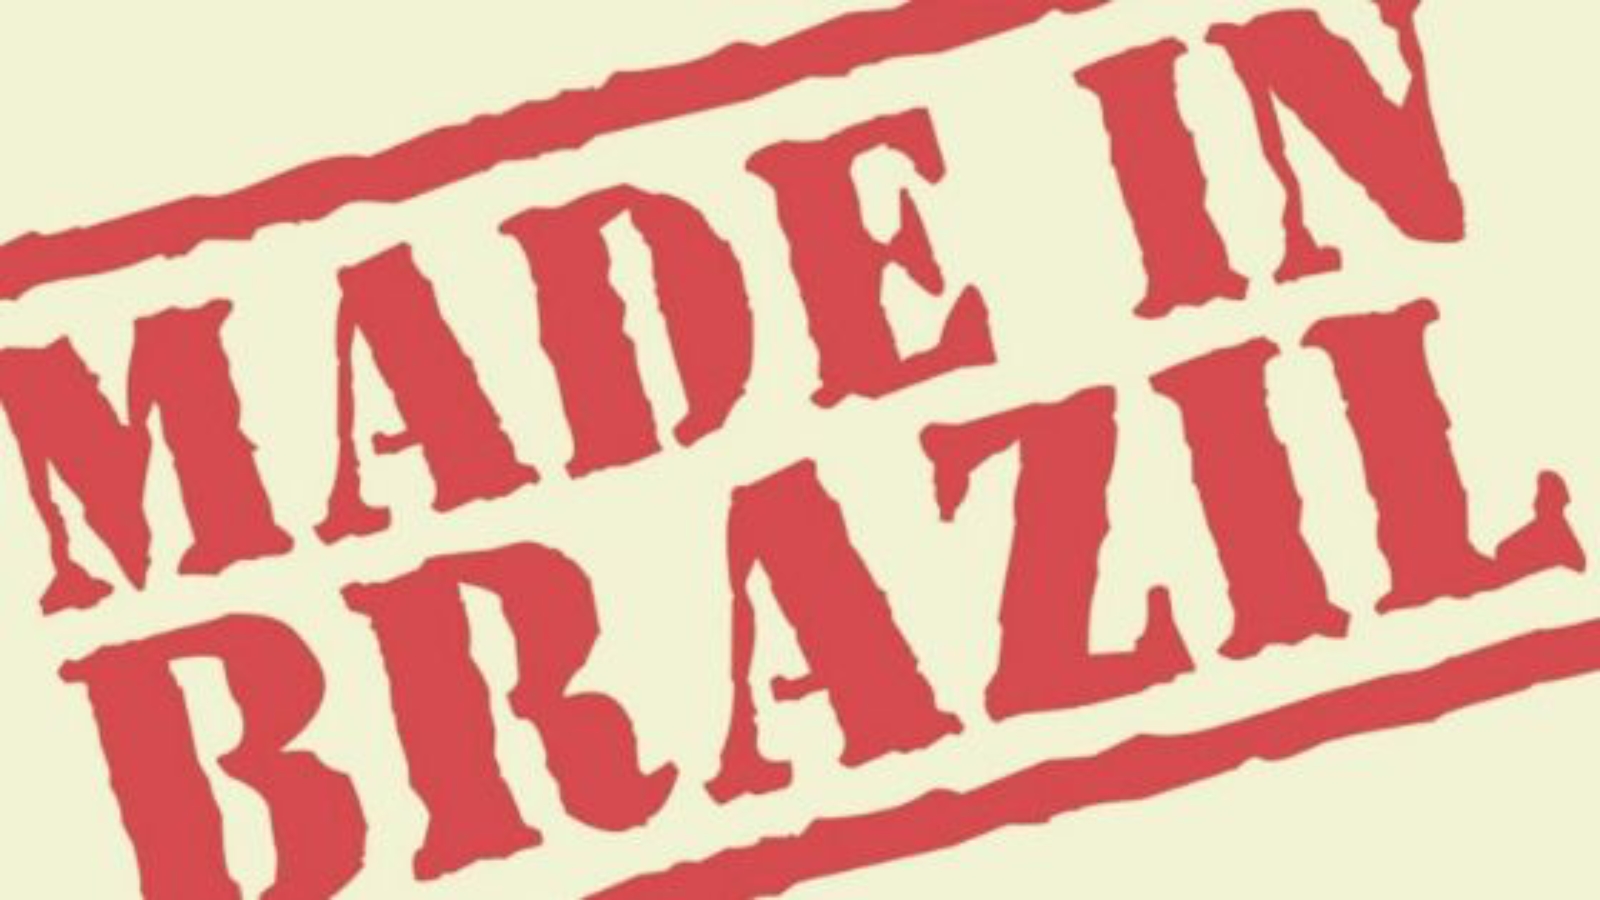 quanto valem as marcas brasileiras